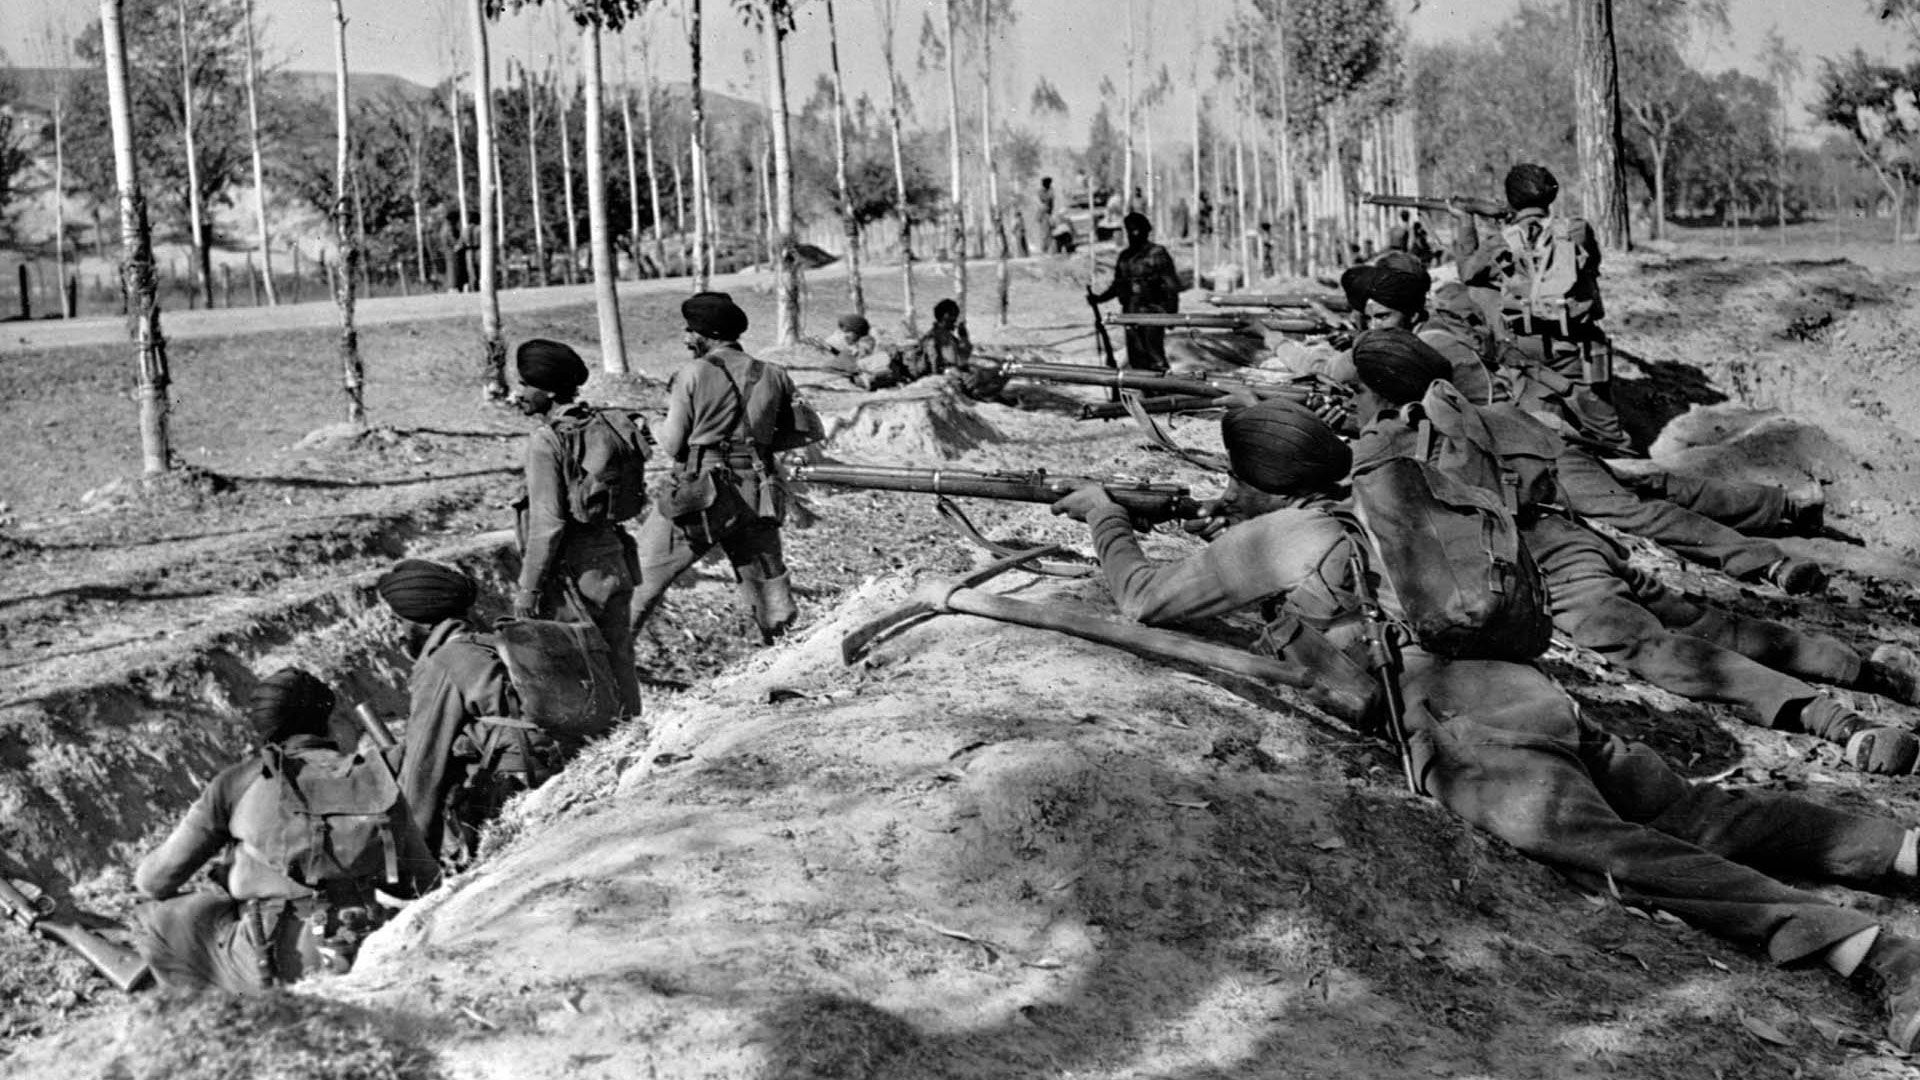 Foto de 1947 que muestra a las tropas de indios Sikh durante la guerra para el control de la región disputada (AP/Max Desfor, archivo)